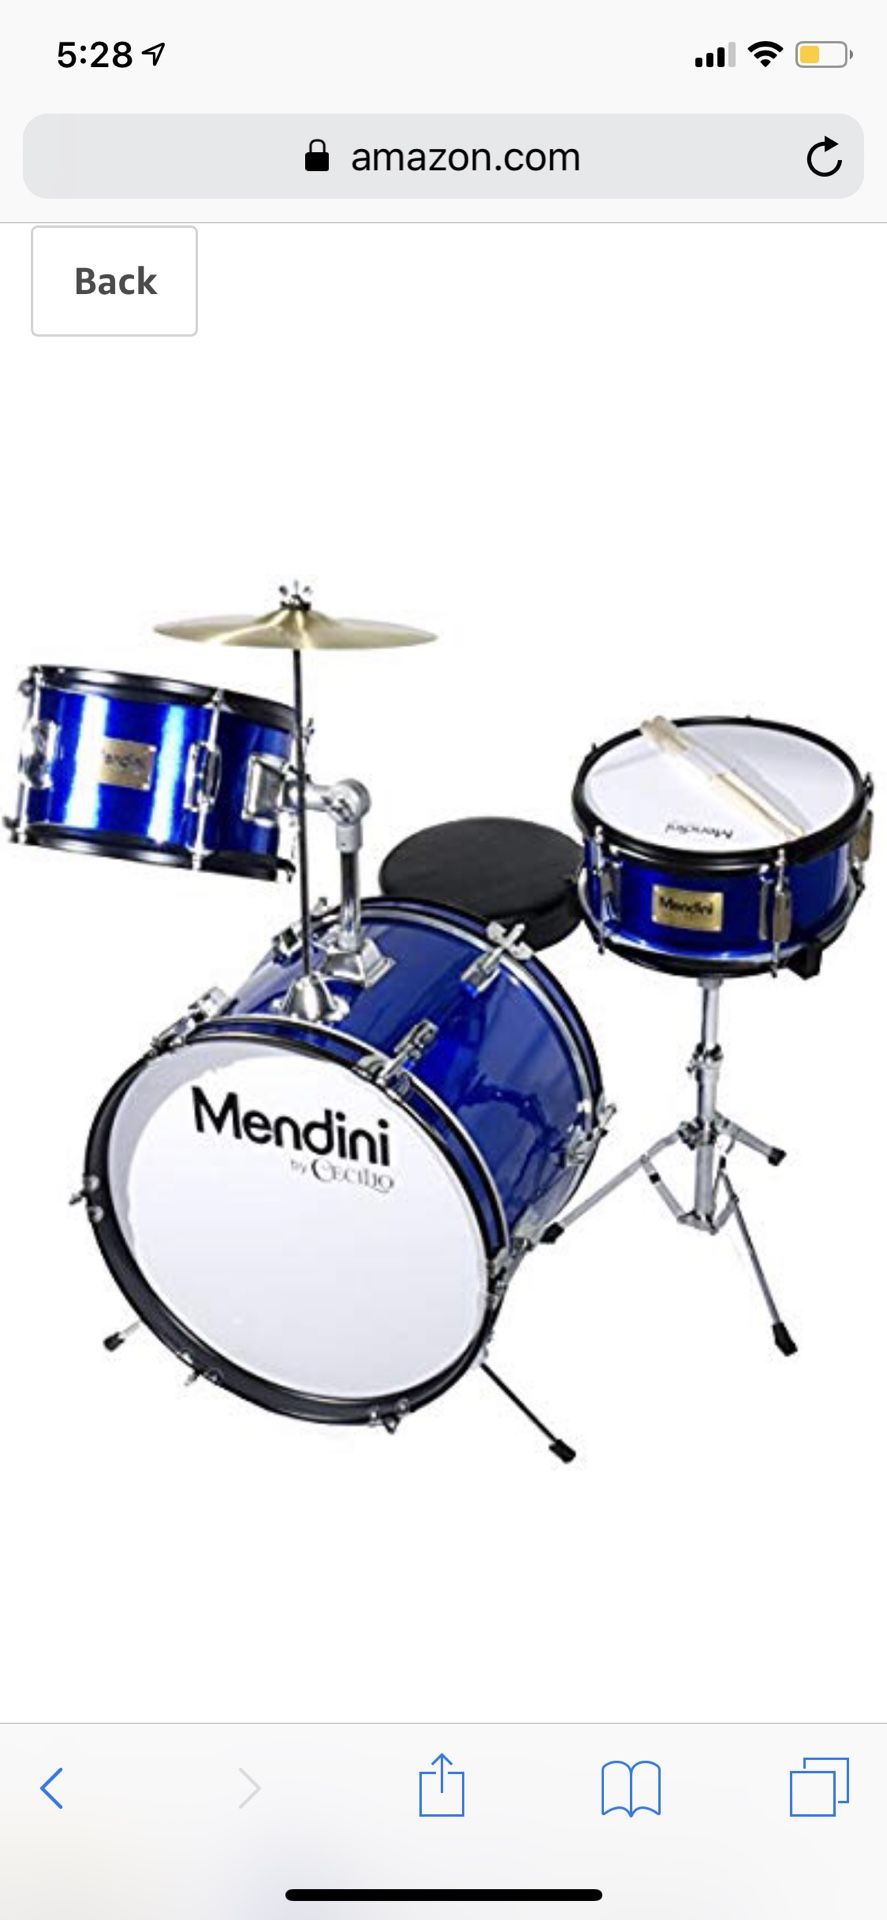 Mendini junior drum set 16”